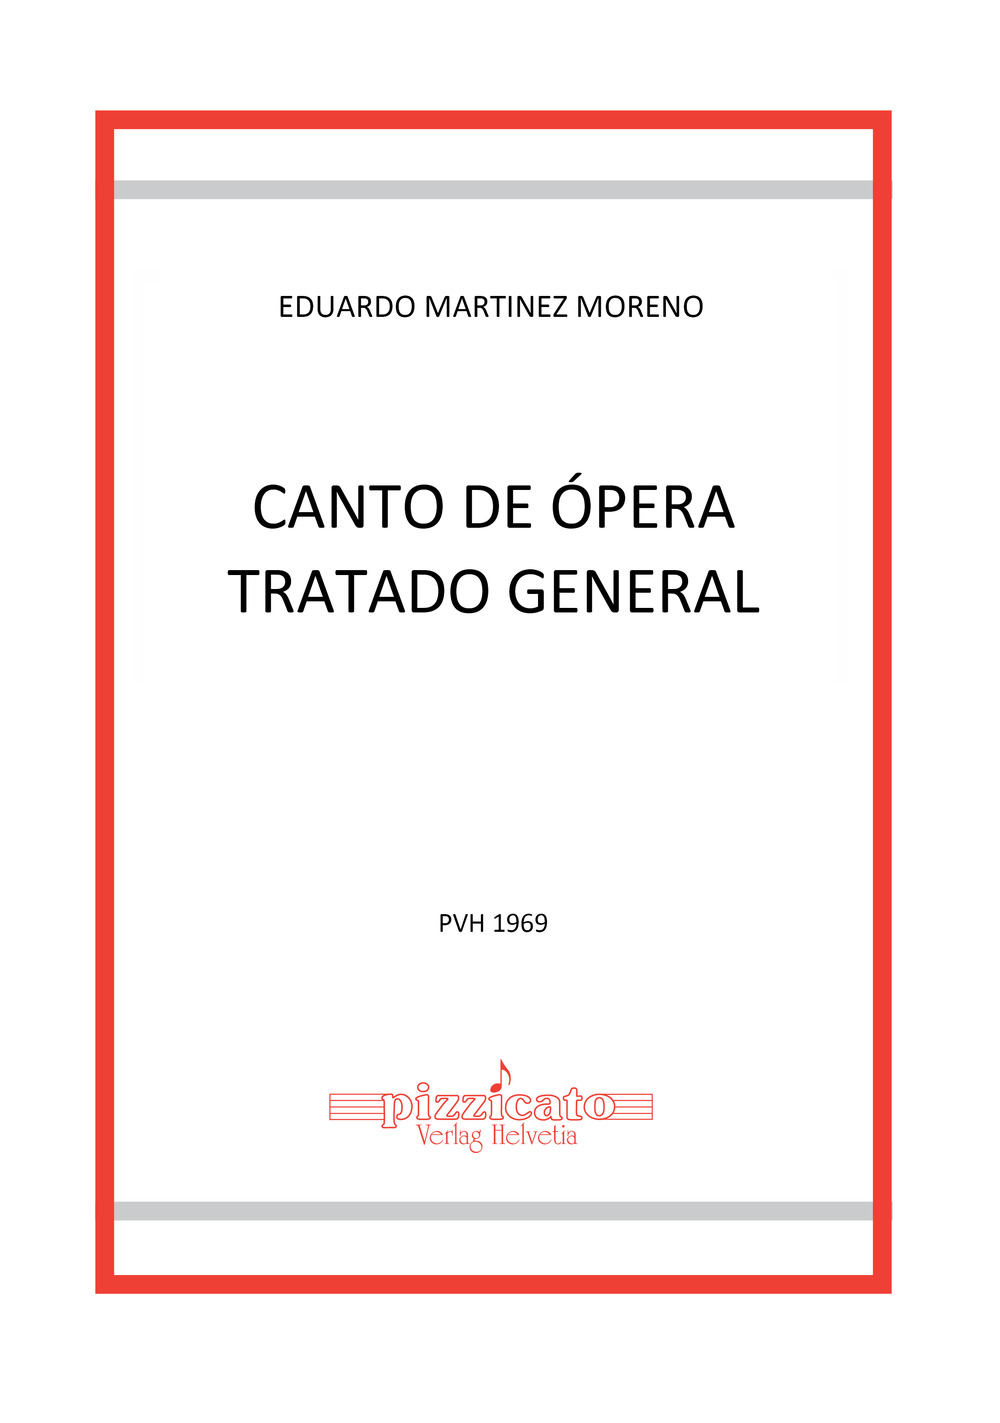 Libri Moreno Eduardo Martinez - Canto De Opera. Tratado General NUOVO SIGILLATO, EDIZIONE DEL 22/03/2022 SUBITO DISPONIBILE